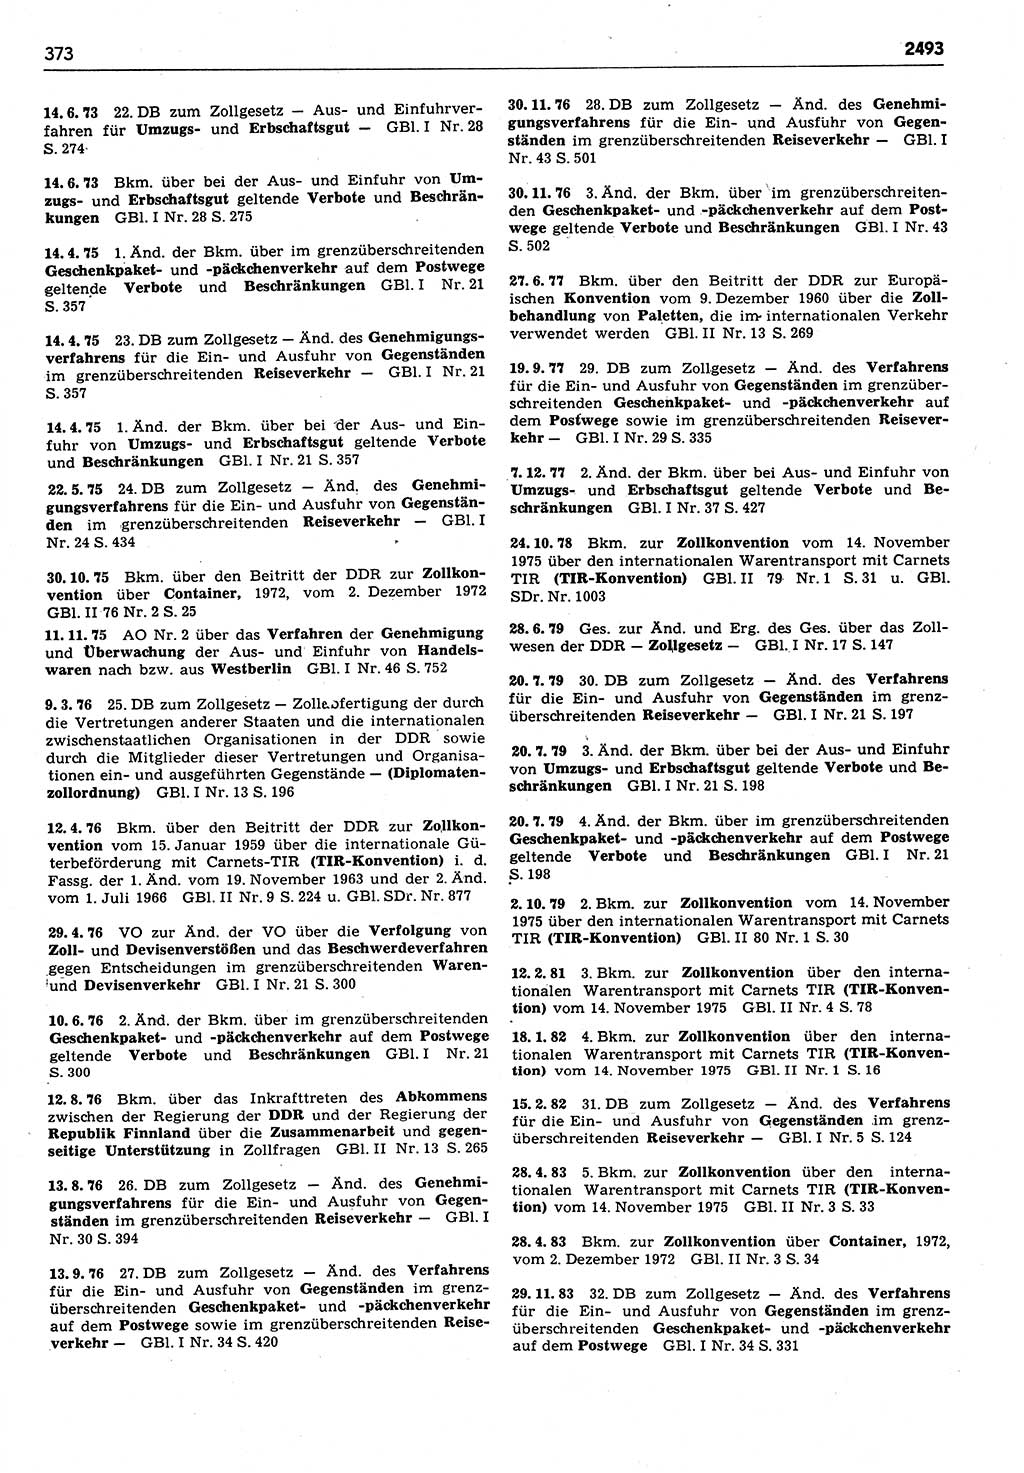 Das geltende Recht der Deutschen Demokratischen Republik (DDR) 1949-1988, Seite 373 (Gelt. R. DDR 1949-1988, S. 373)